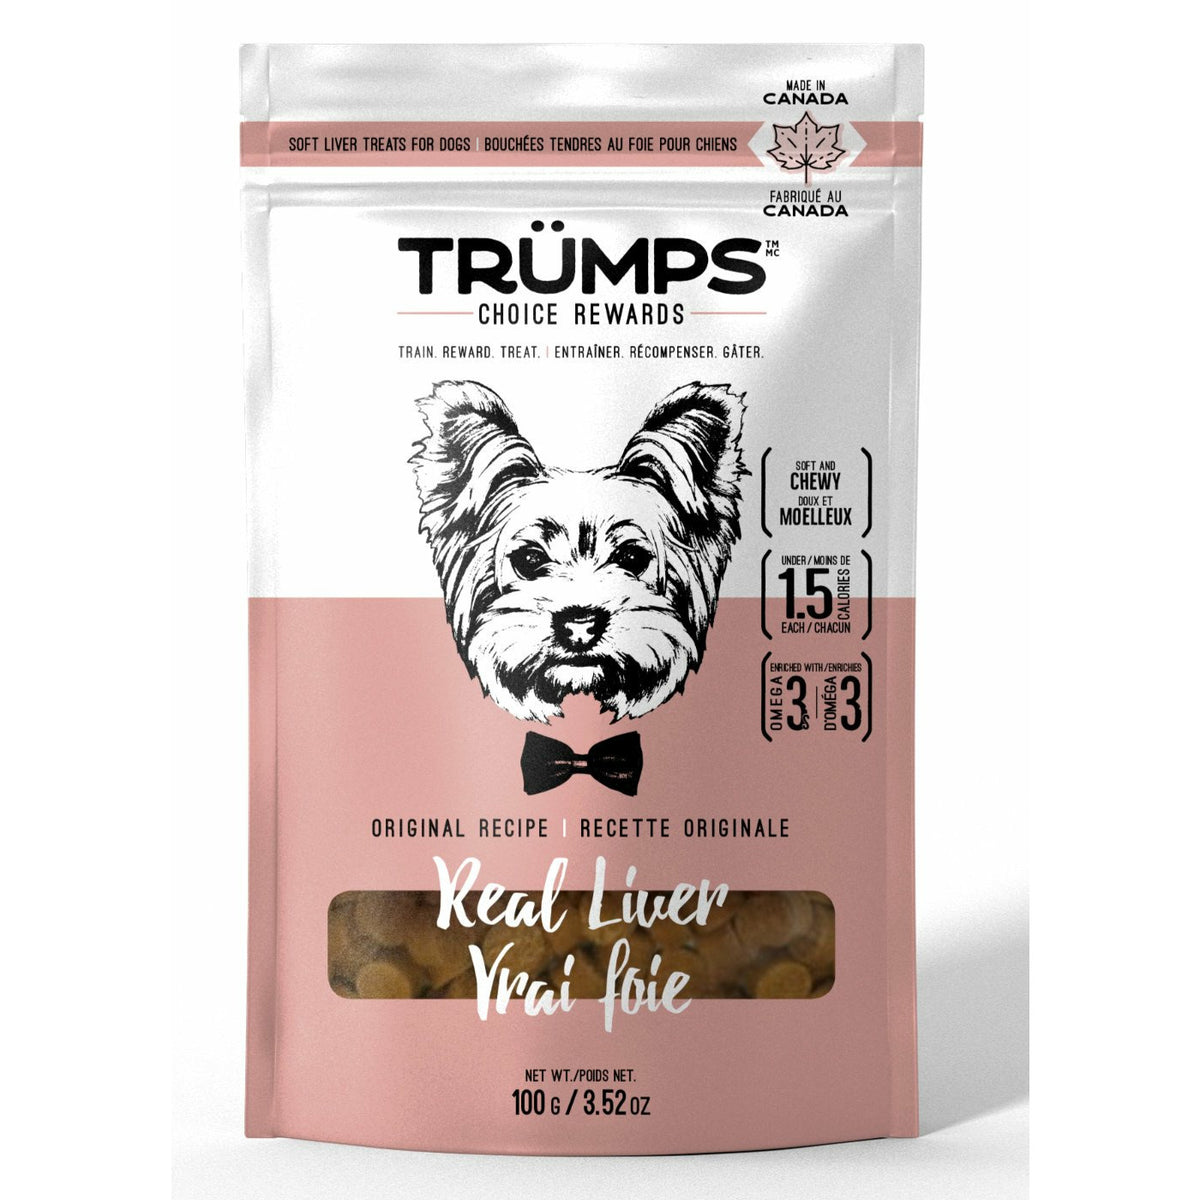 Trumps Choice Rewards Gâteries pour chiens - Vrai foie (100 g)